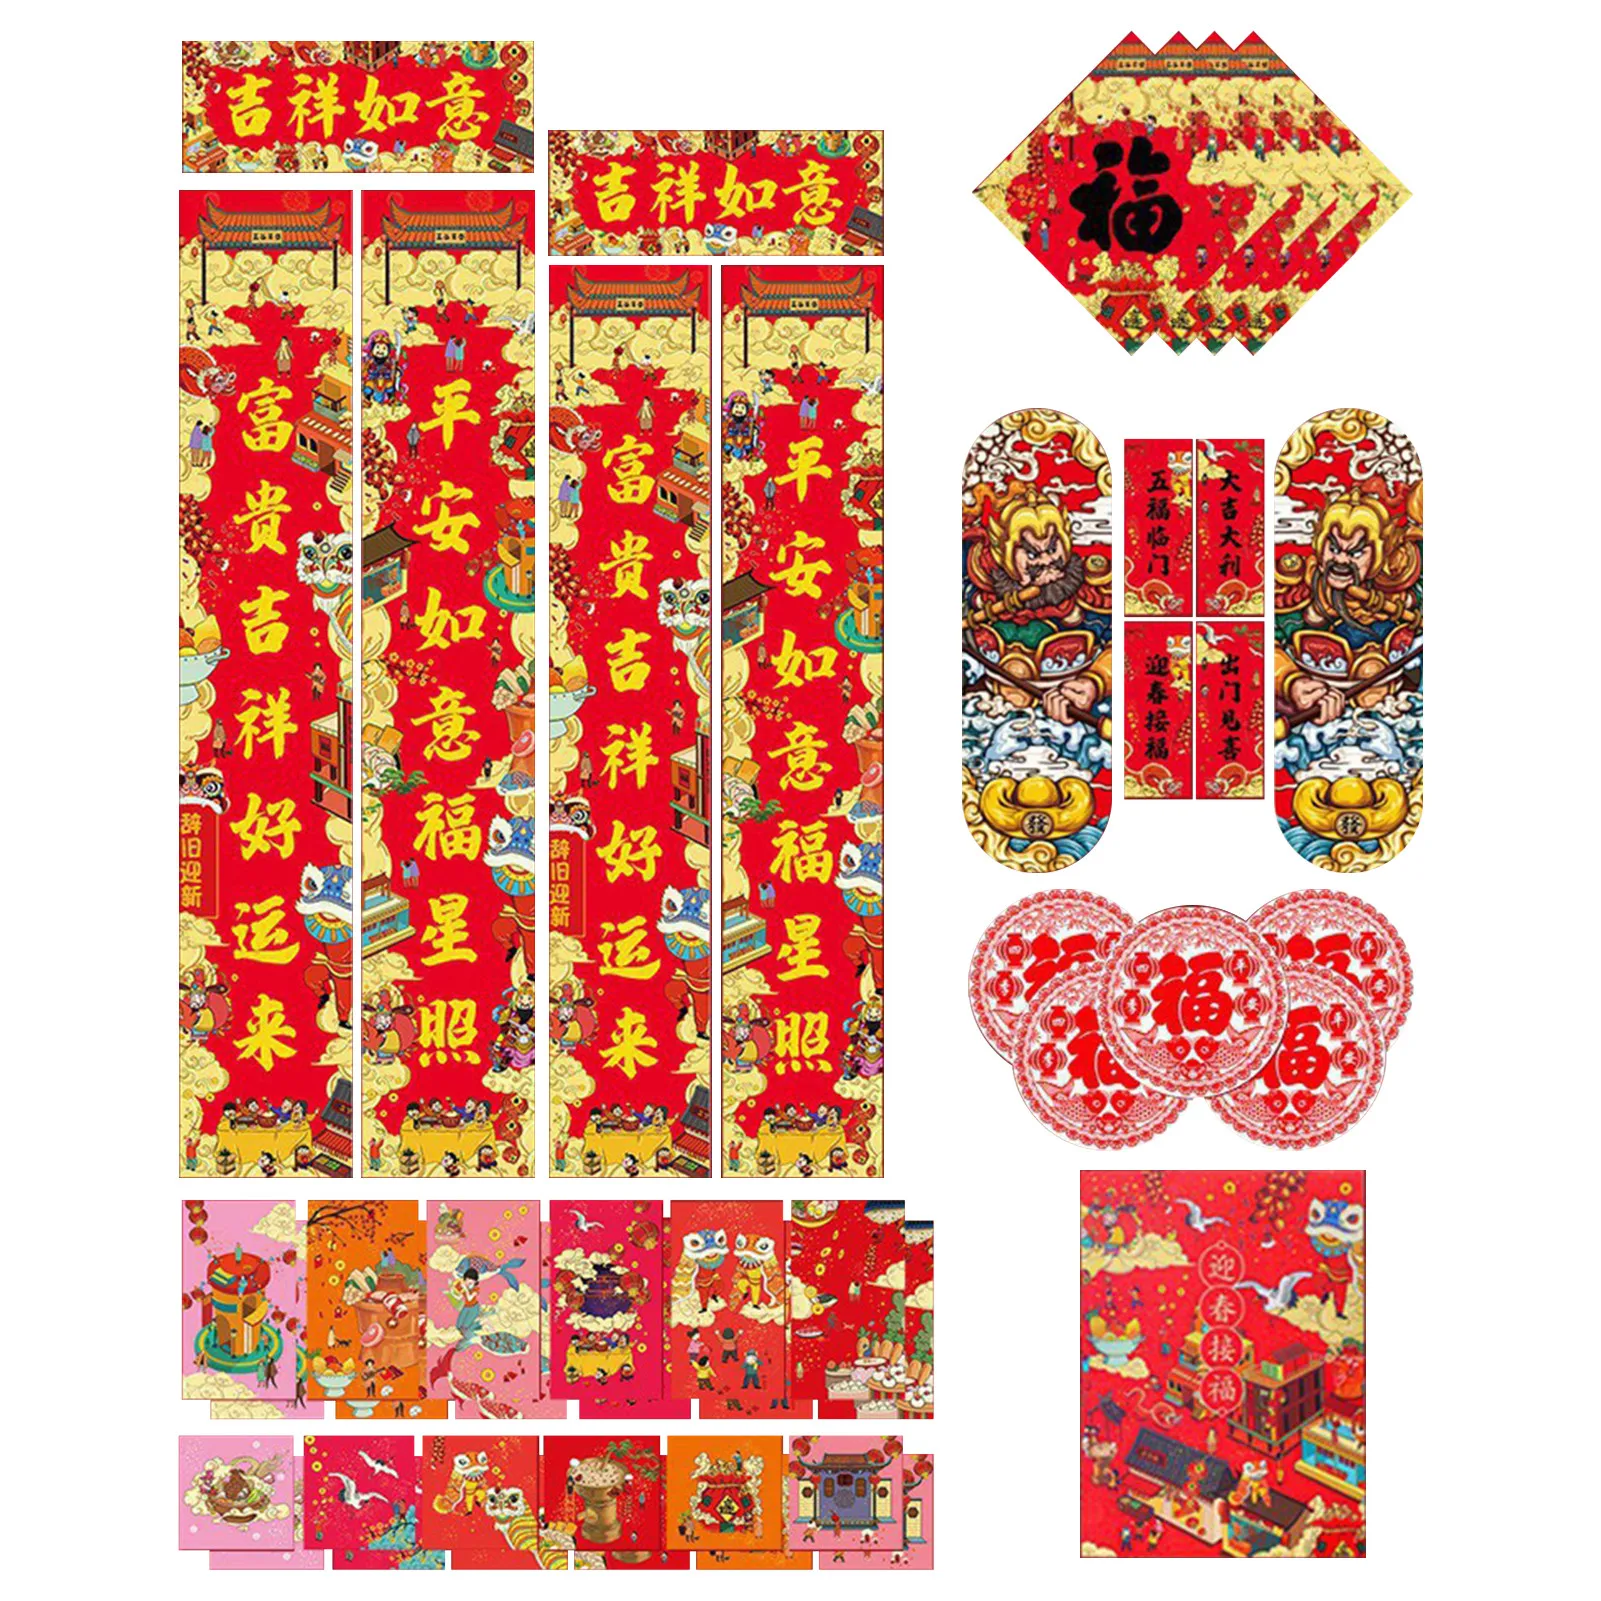 

Китайское Новогоднее украшение, модель 2022 года, наклейка на дверь в стиле фонаря тигра, весна, красные конверты, лунная Новогодняя вечеринка